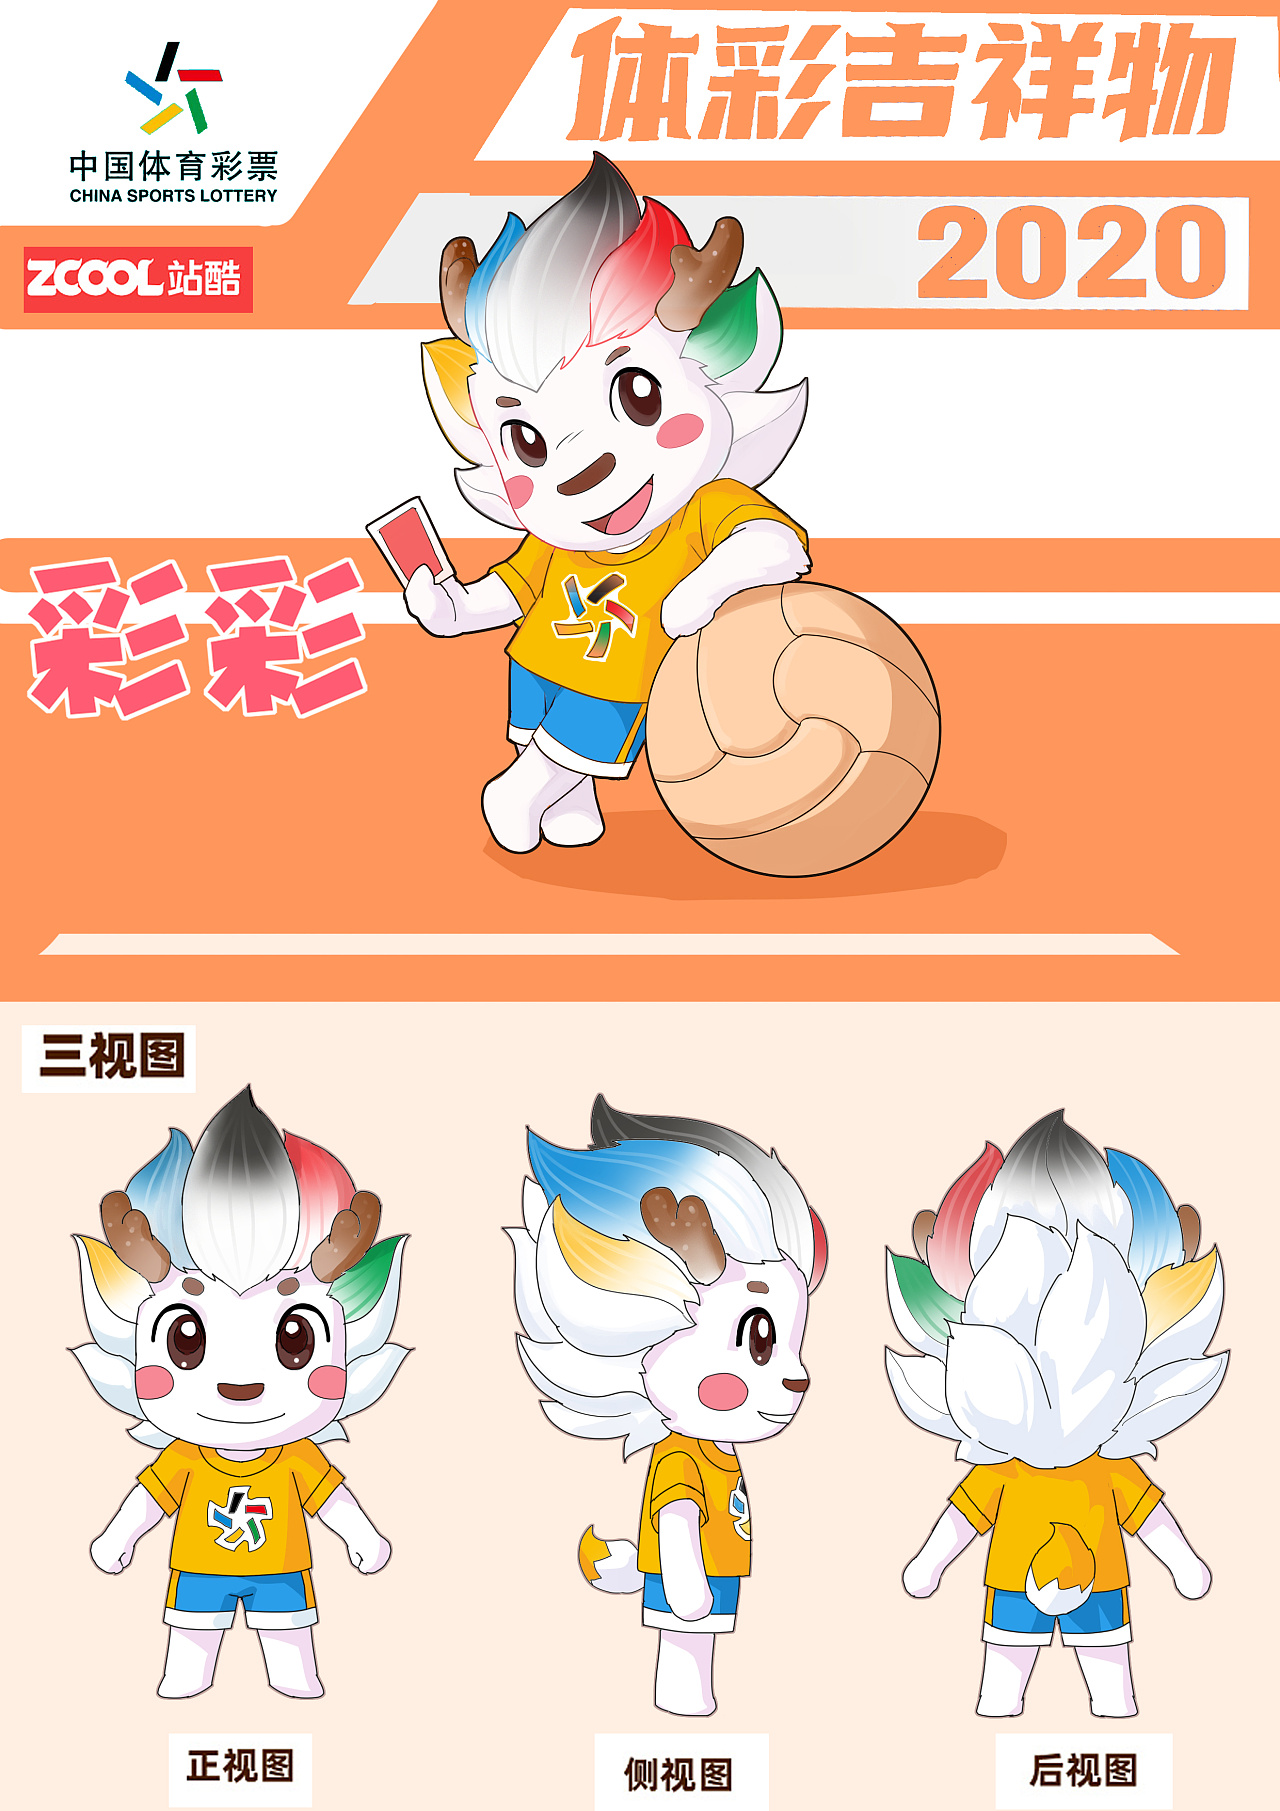 中国体育彩票吉祥物——彩彩 设计